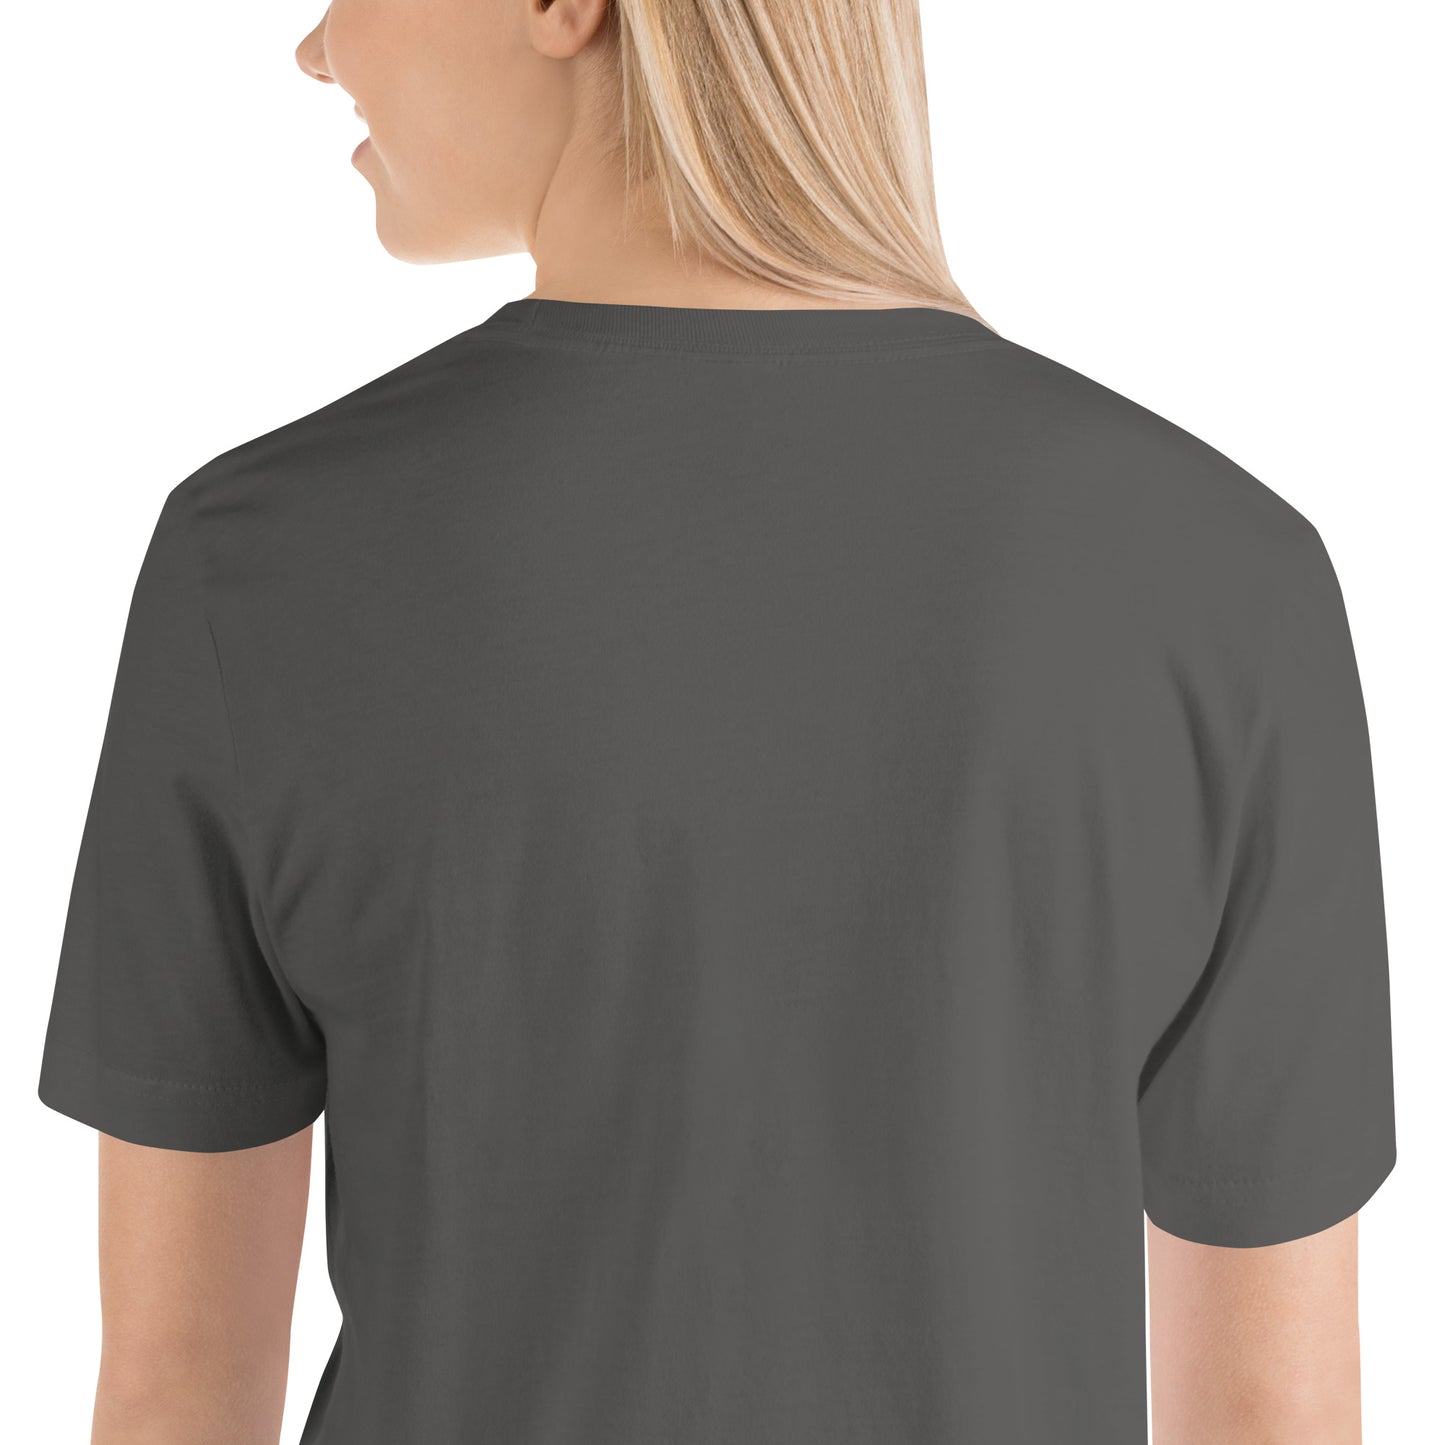 Corporate Kiss-Butt T-Shirt